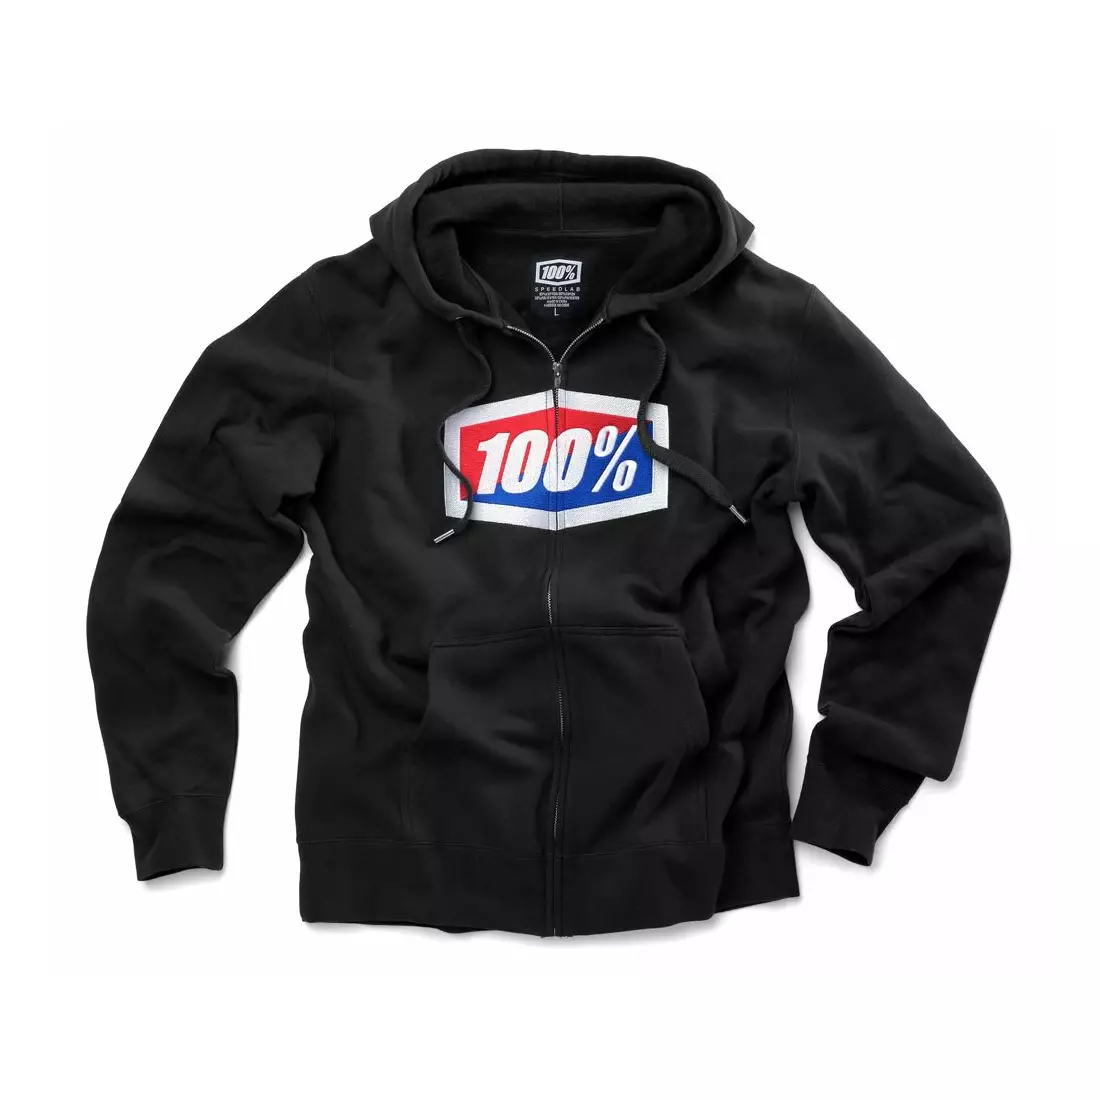 100% pánska športová mikina official hooded zip black STO-36005-001-10